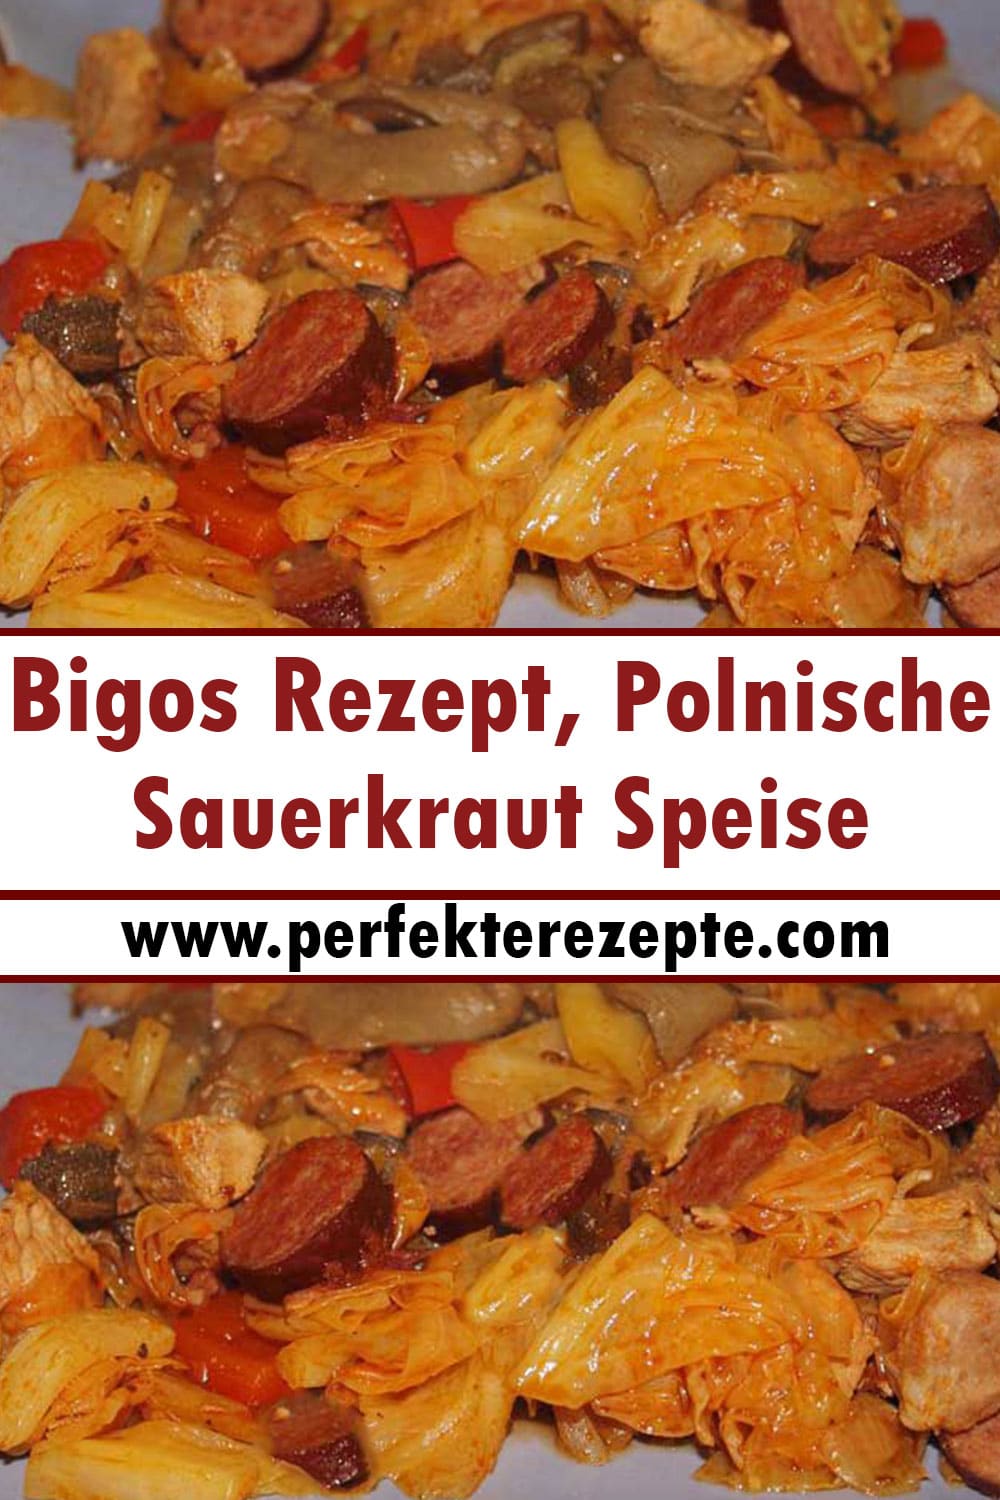 Bigos Rezept, Polnische Sauerkraut Speise